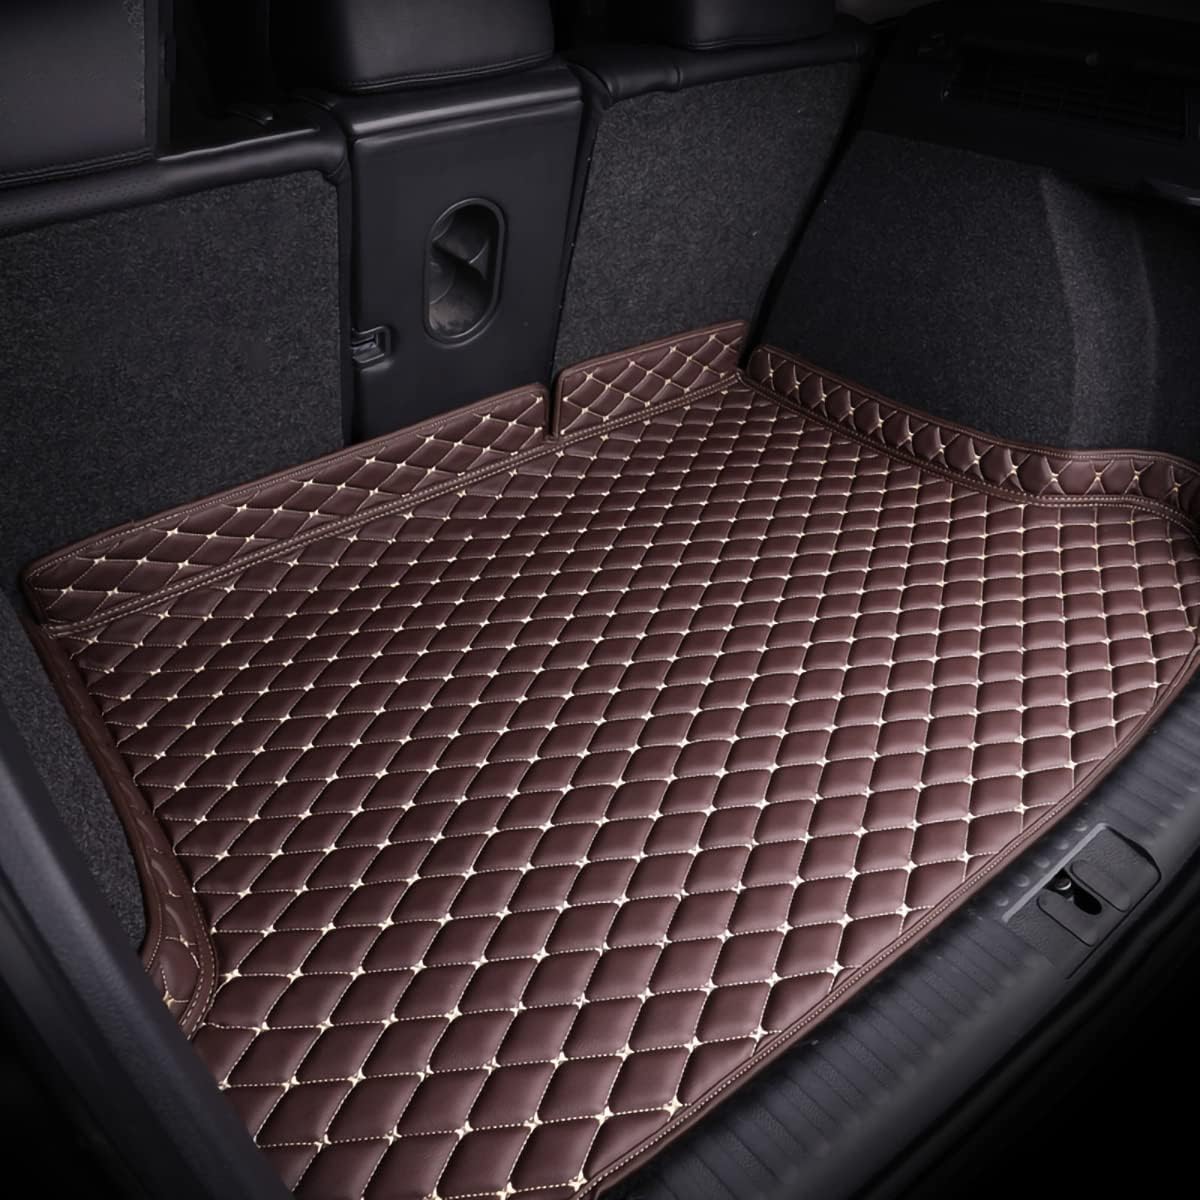 Auto Kofferraummatten für Ford Focus Hatchback 2012-2018, Kratzfeste Kofferraum Schutzmatten.,Brown von LPOOSAKW